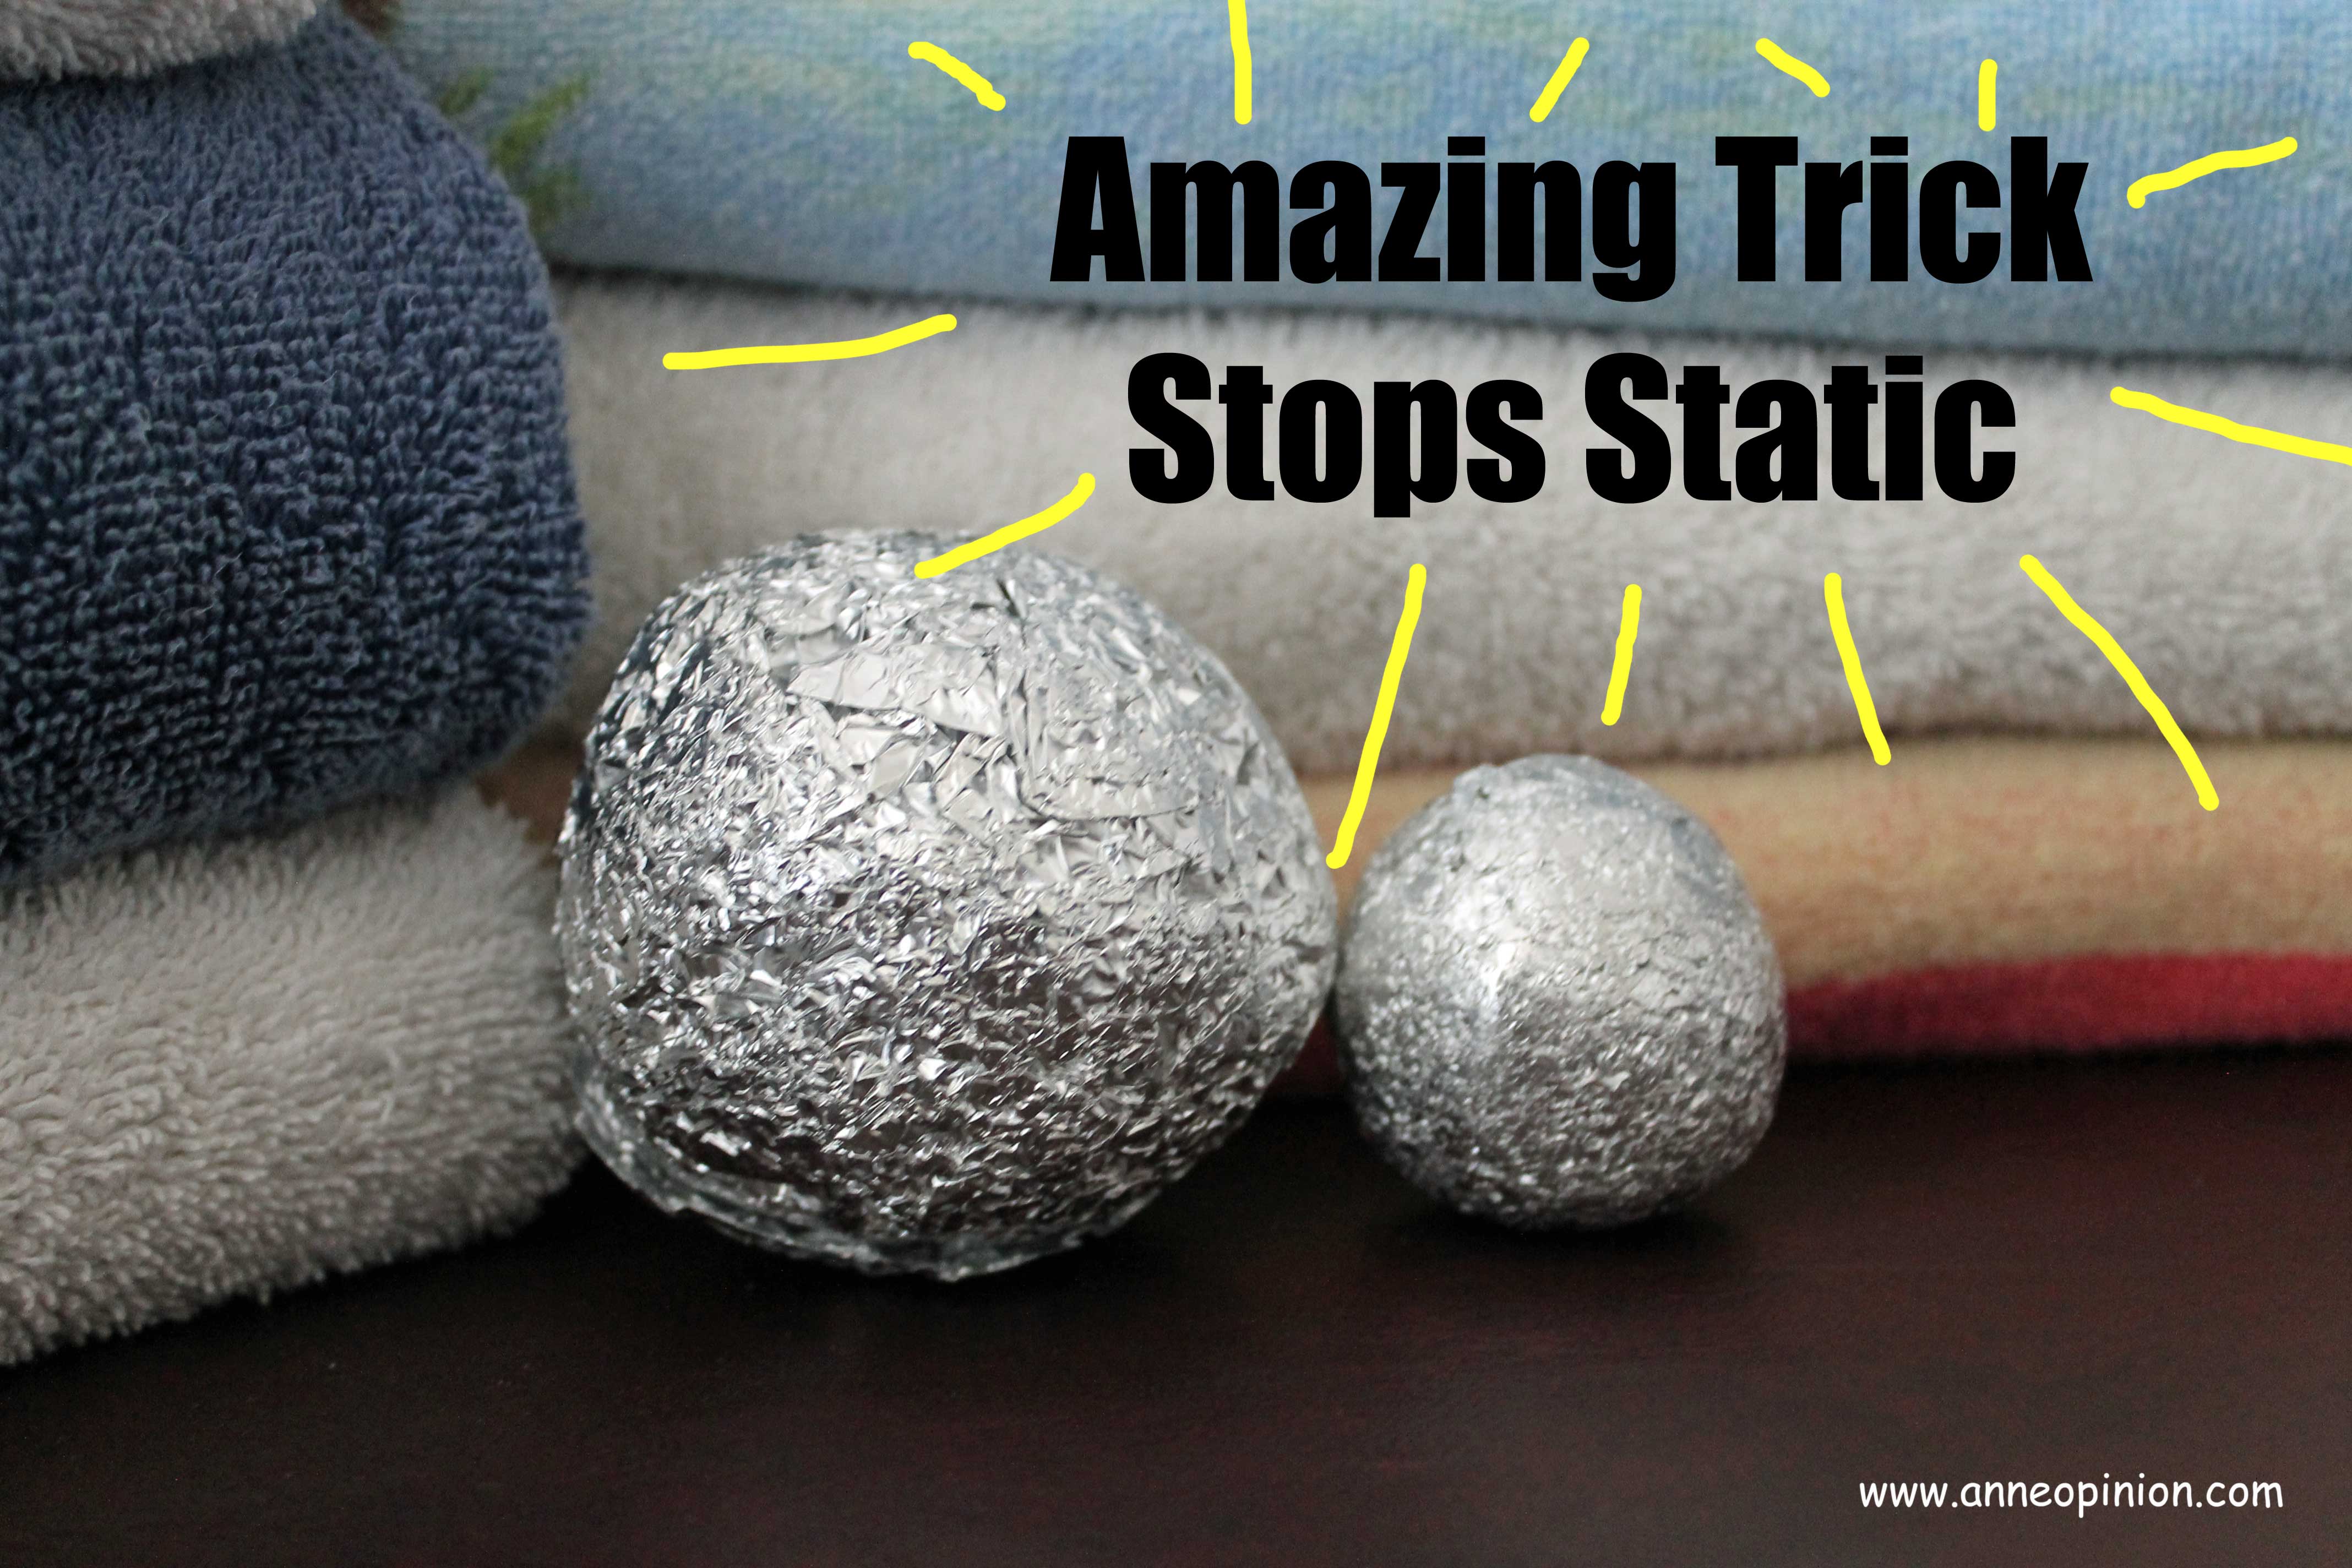 Как правильно подобрать и применить шарики для стирки белья, пуховиков, и других вещей